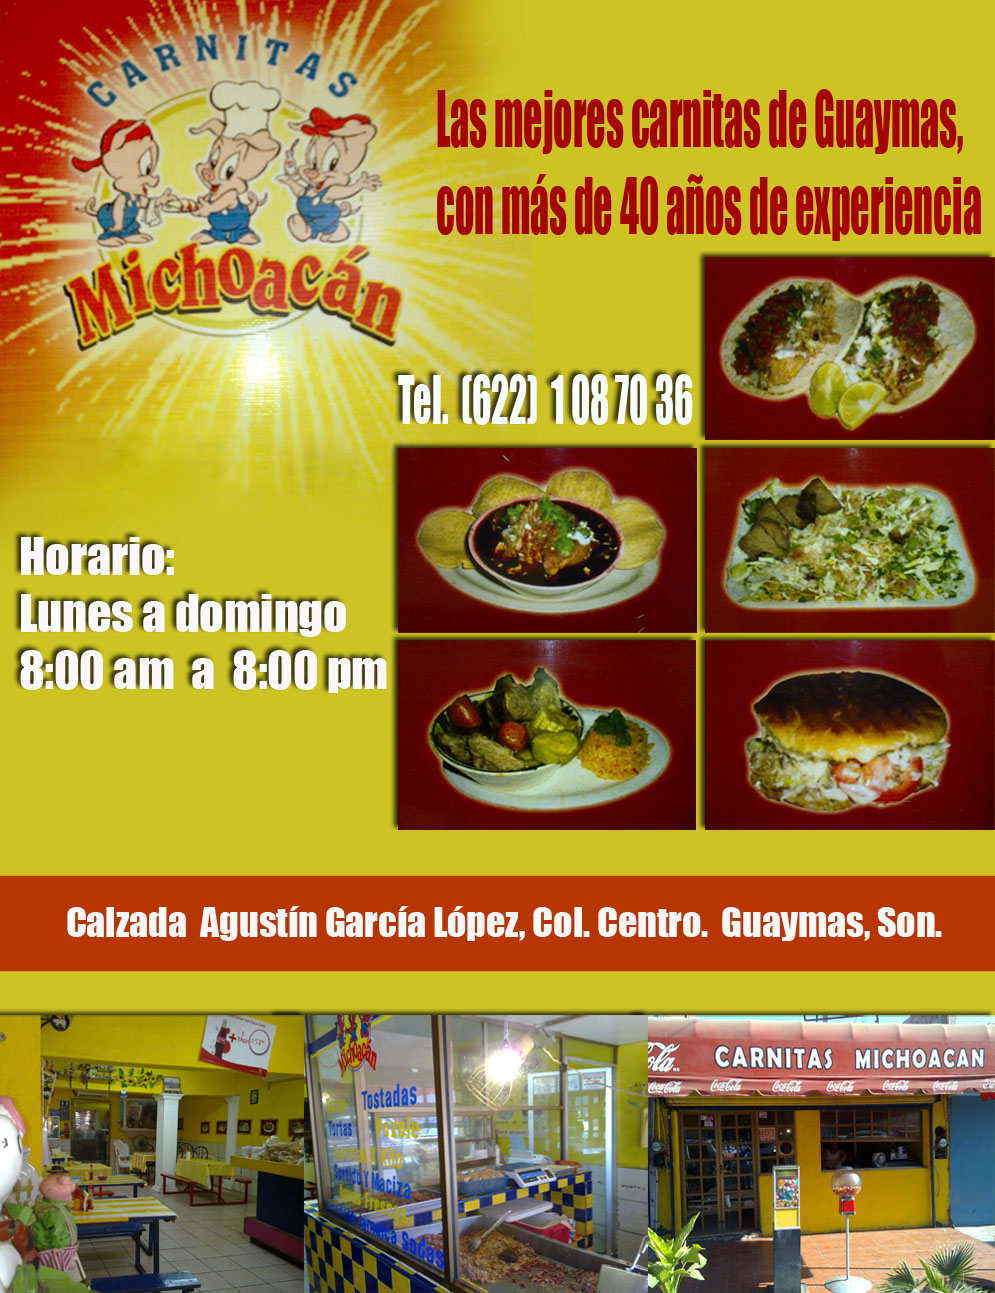 Carnitas  Michoacán-Las mejores carnitas de Guaymas con más de 40 años de experiencia.                